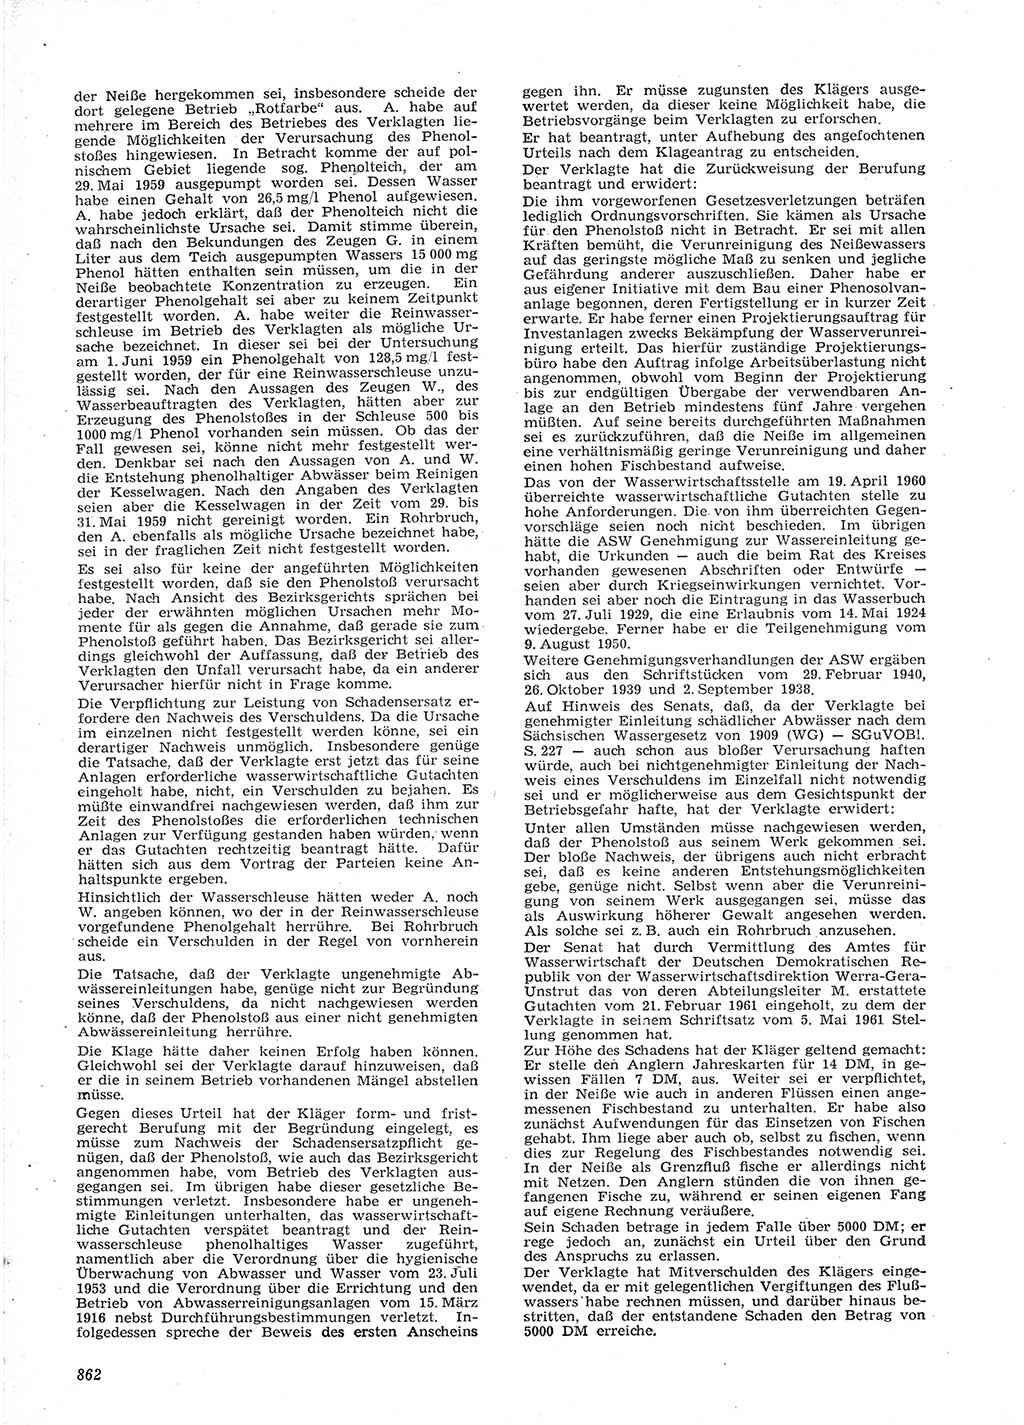 Neue Justiz (NJ), Zeitschrift für Recht und Rechtswissenschaft [Deutsche Demokratische Republik (DDR)], 15. Jahrgang 1961, Seite 862 (NJ DDR 1961, S. 862)